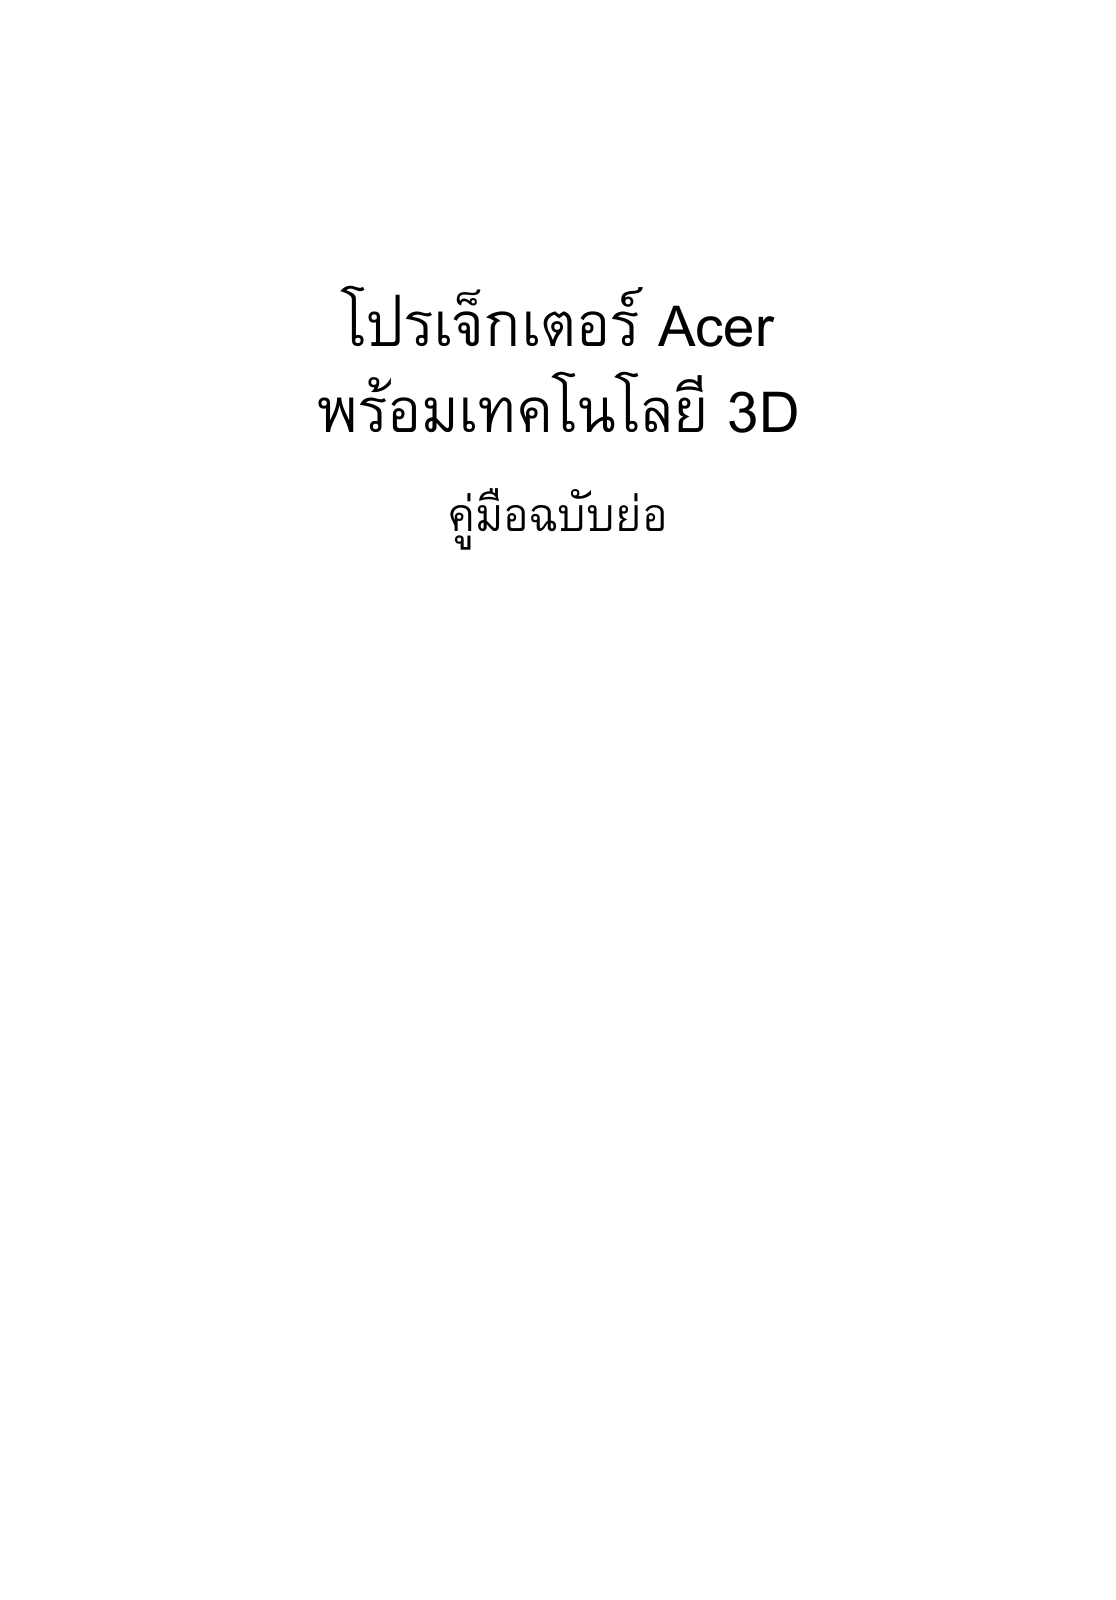 Acer U5313W, H7532BD, K335, X1263, H5370BD Manual